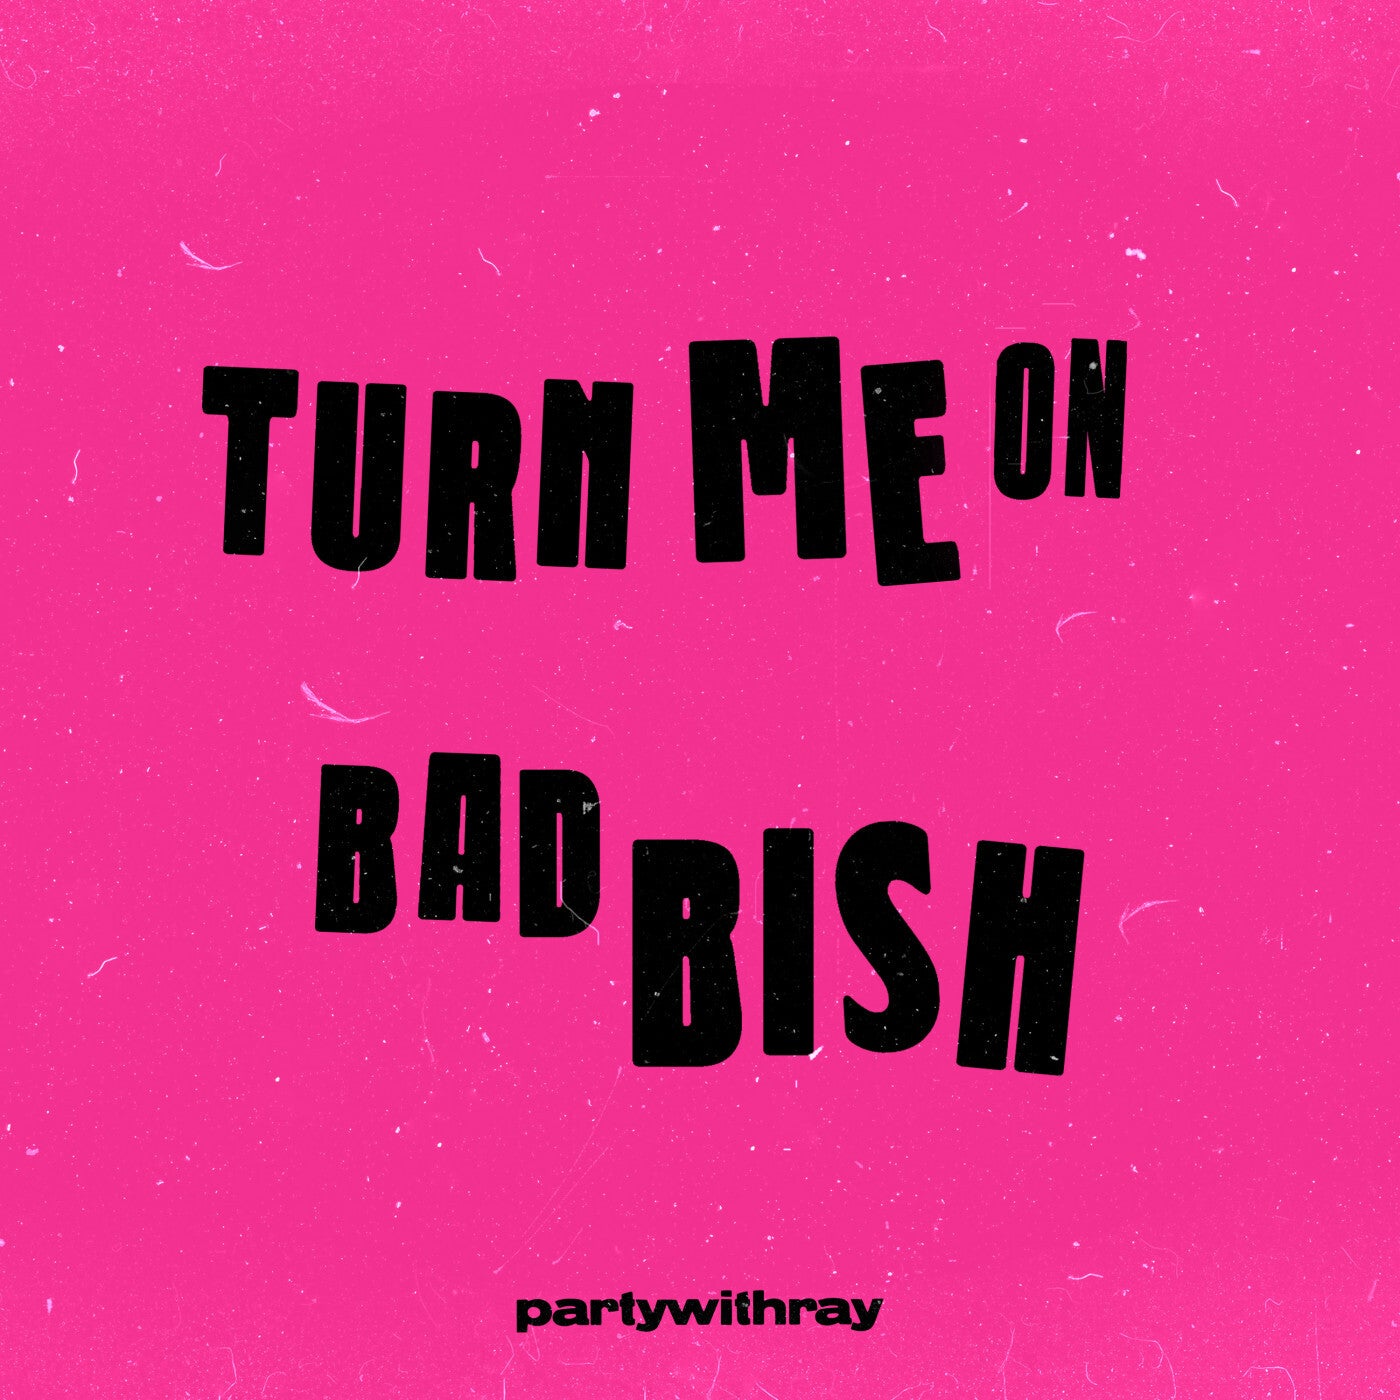 Turn Me On/Bad Bish